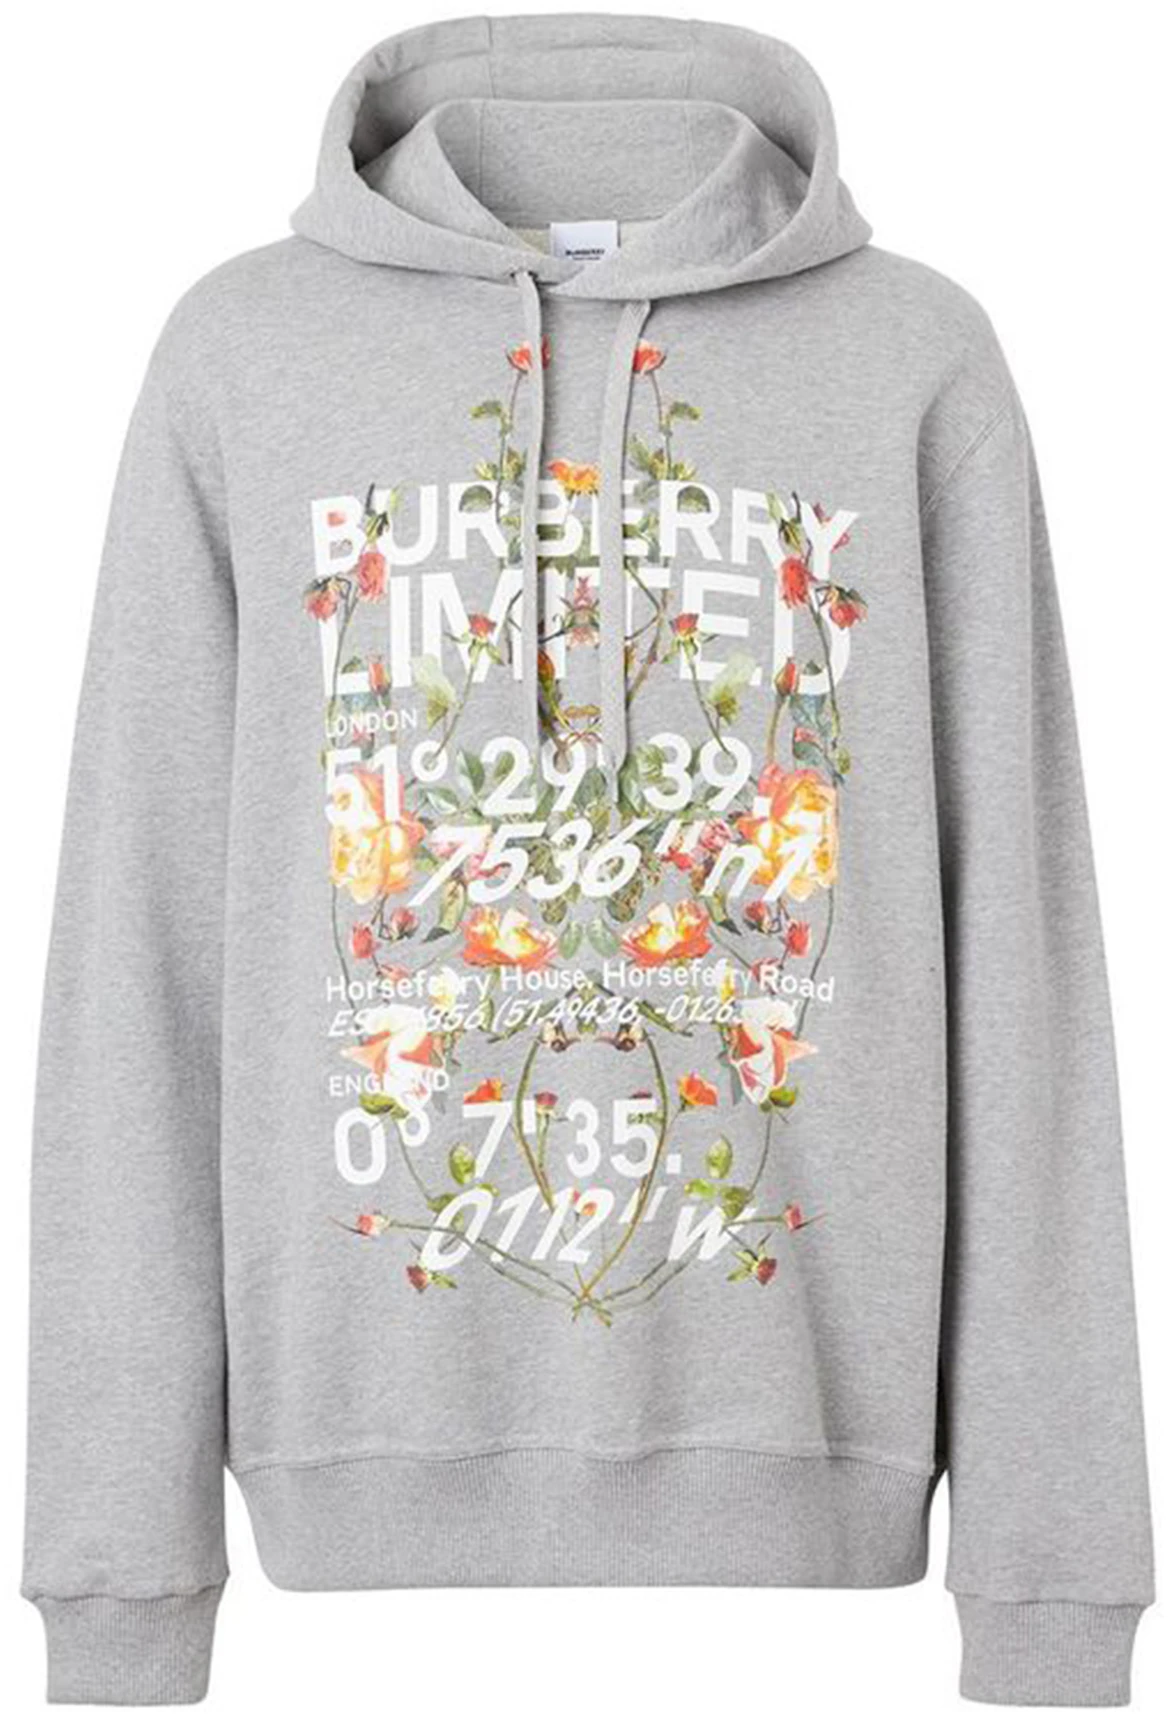 Burberry Floral Montage Print Hoodie Grey/Melange - US